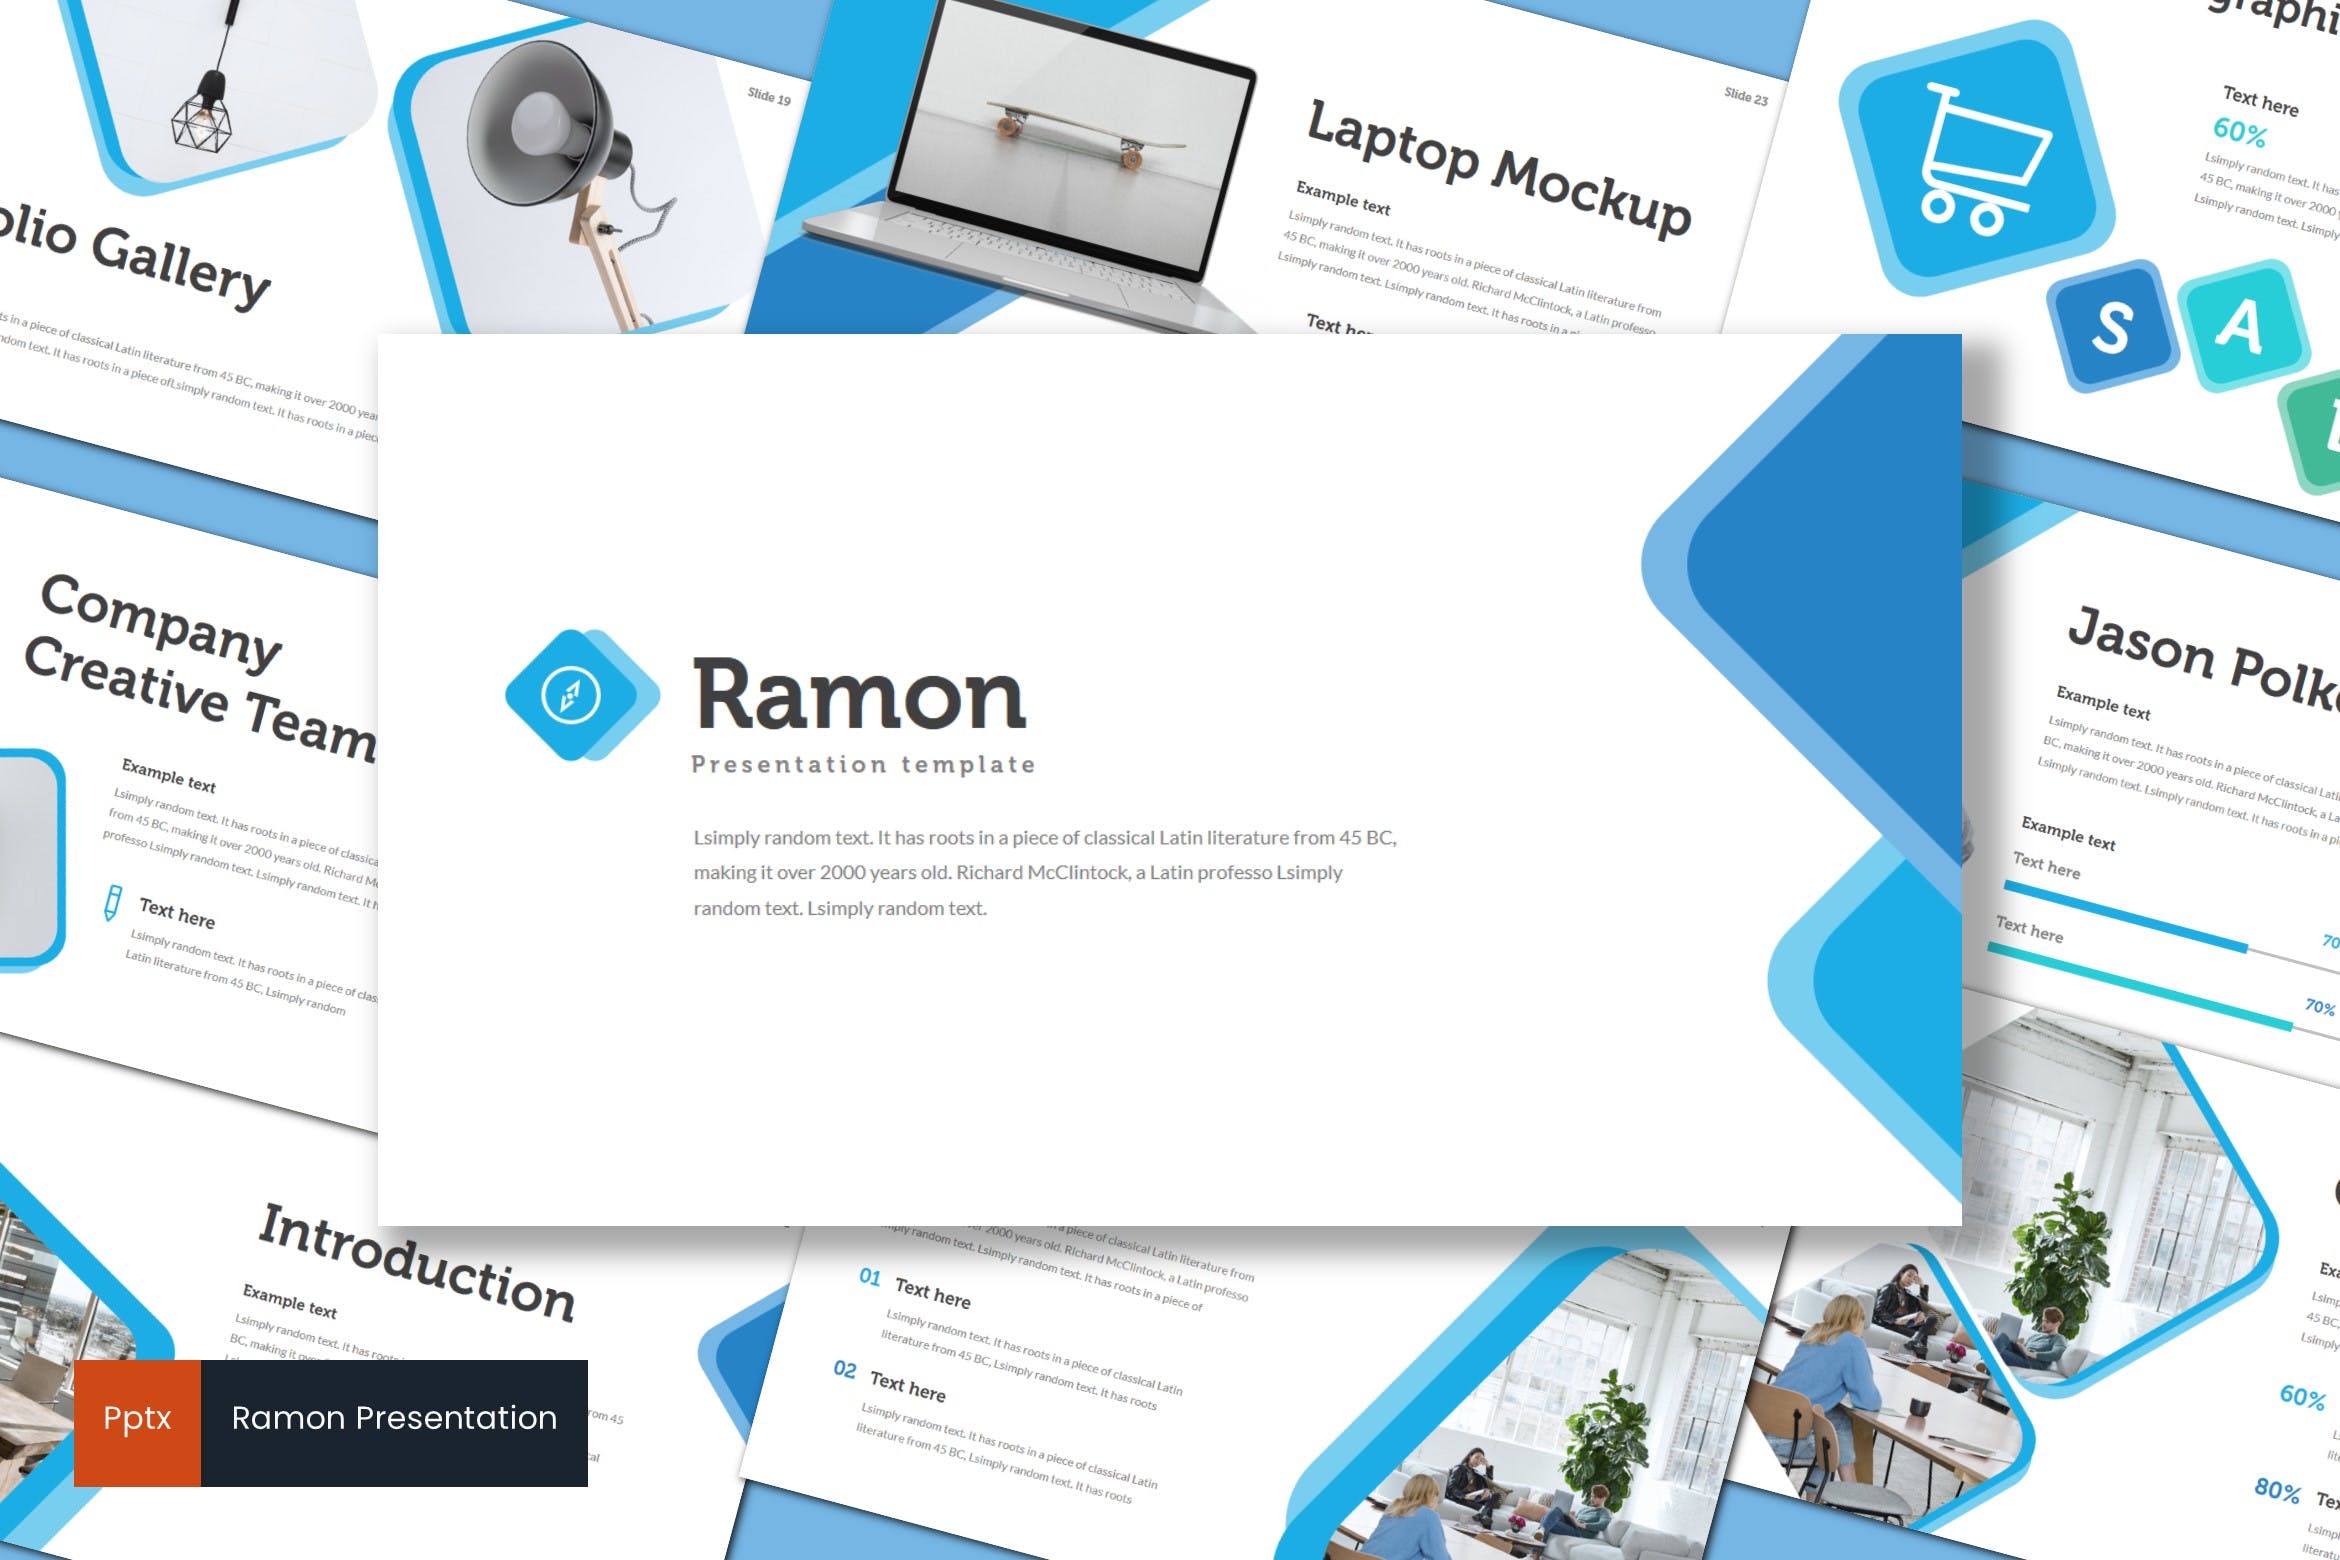 室内设计品牌宣传素材天下精选PPT模板 Ramon – Powerpoint Template插图